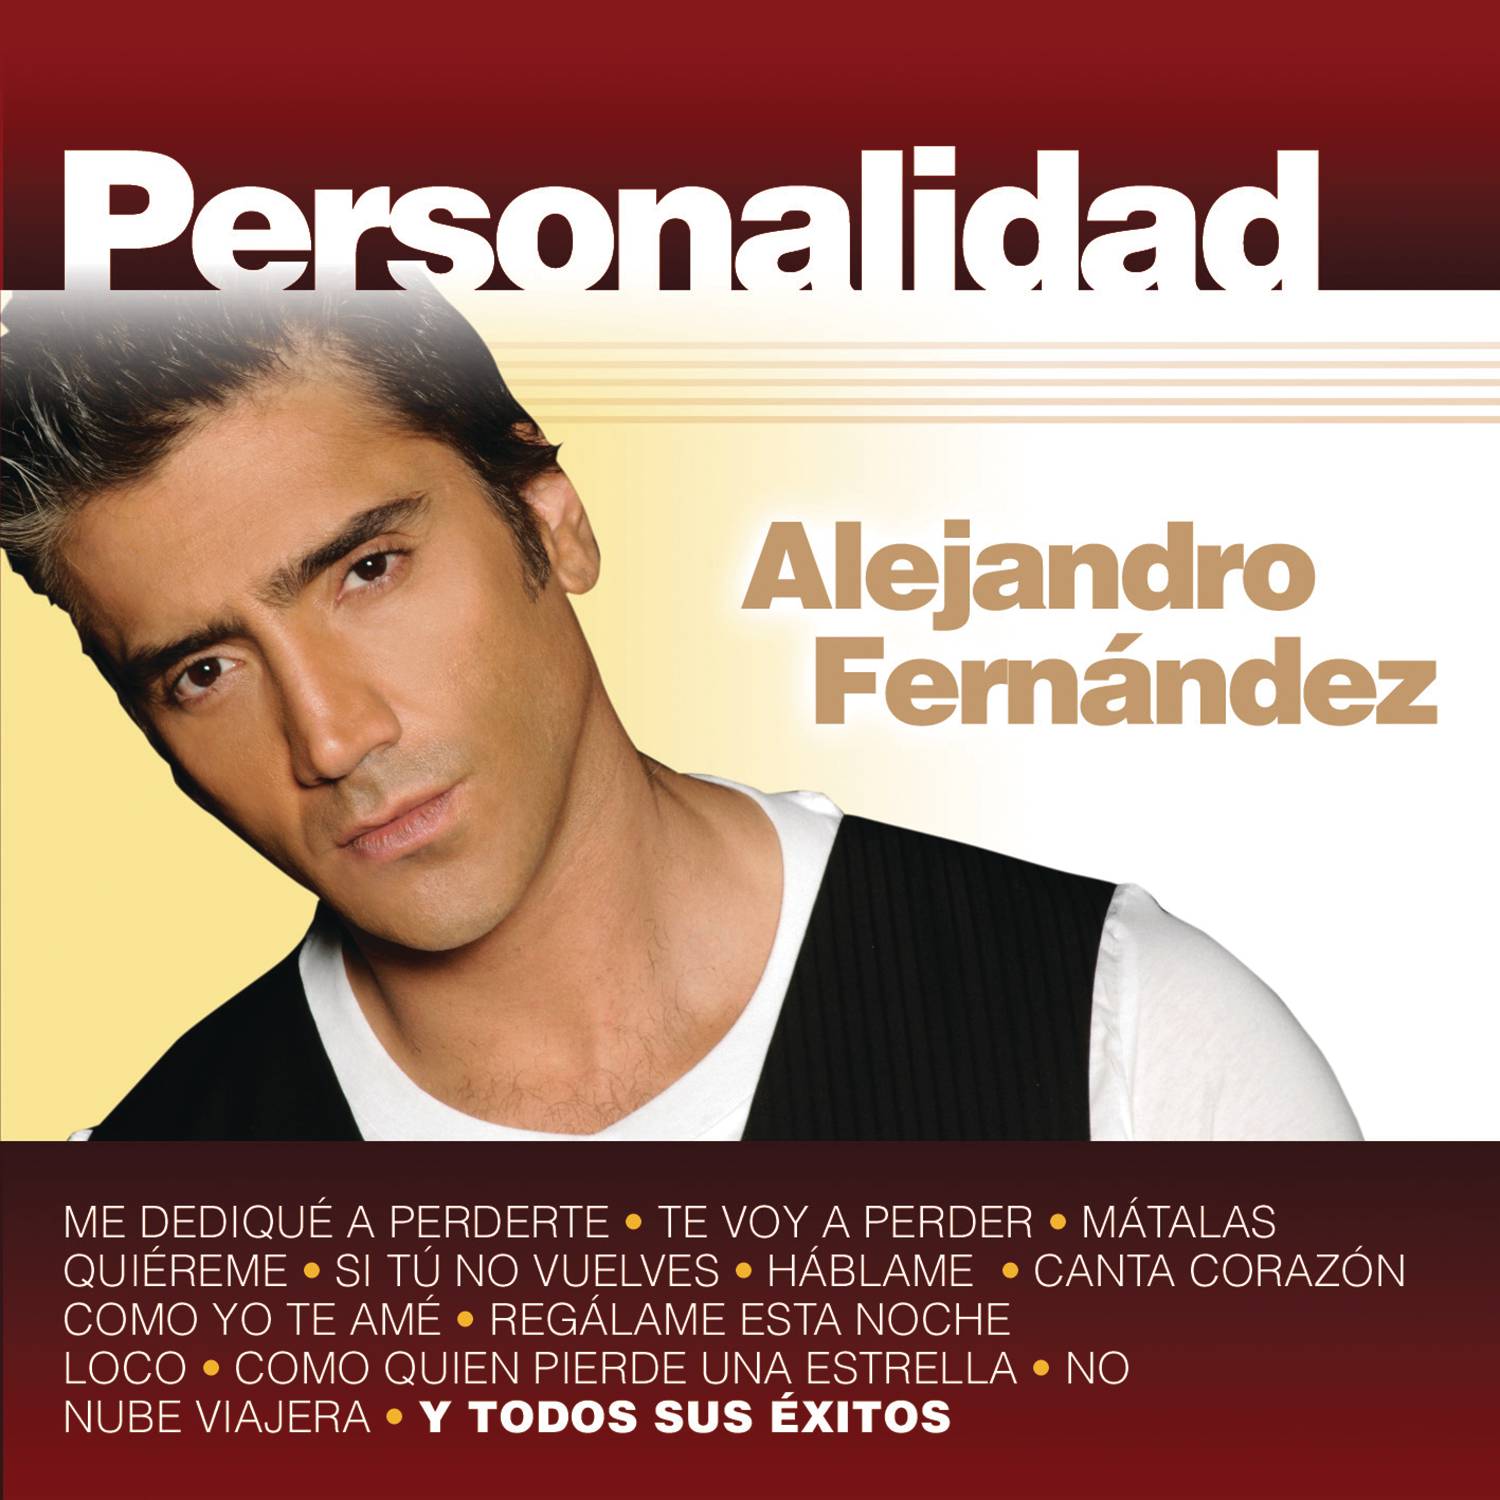 Alejandro fernández como quien pierde una estrella lyrics